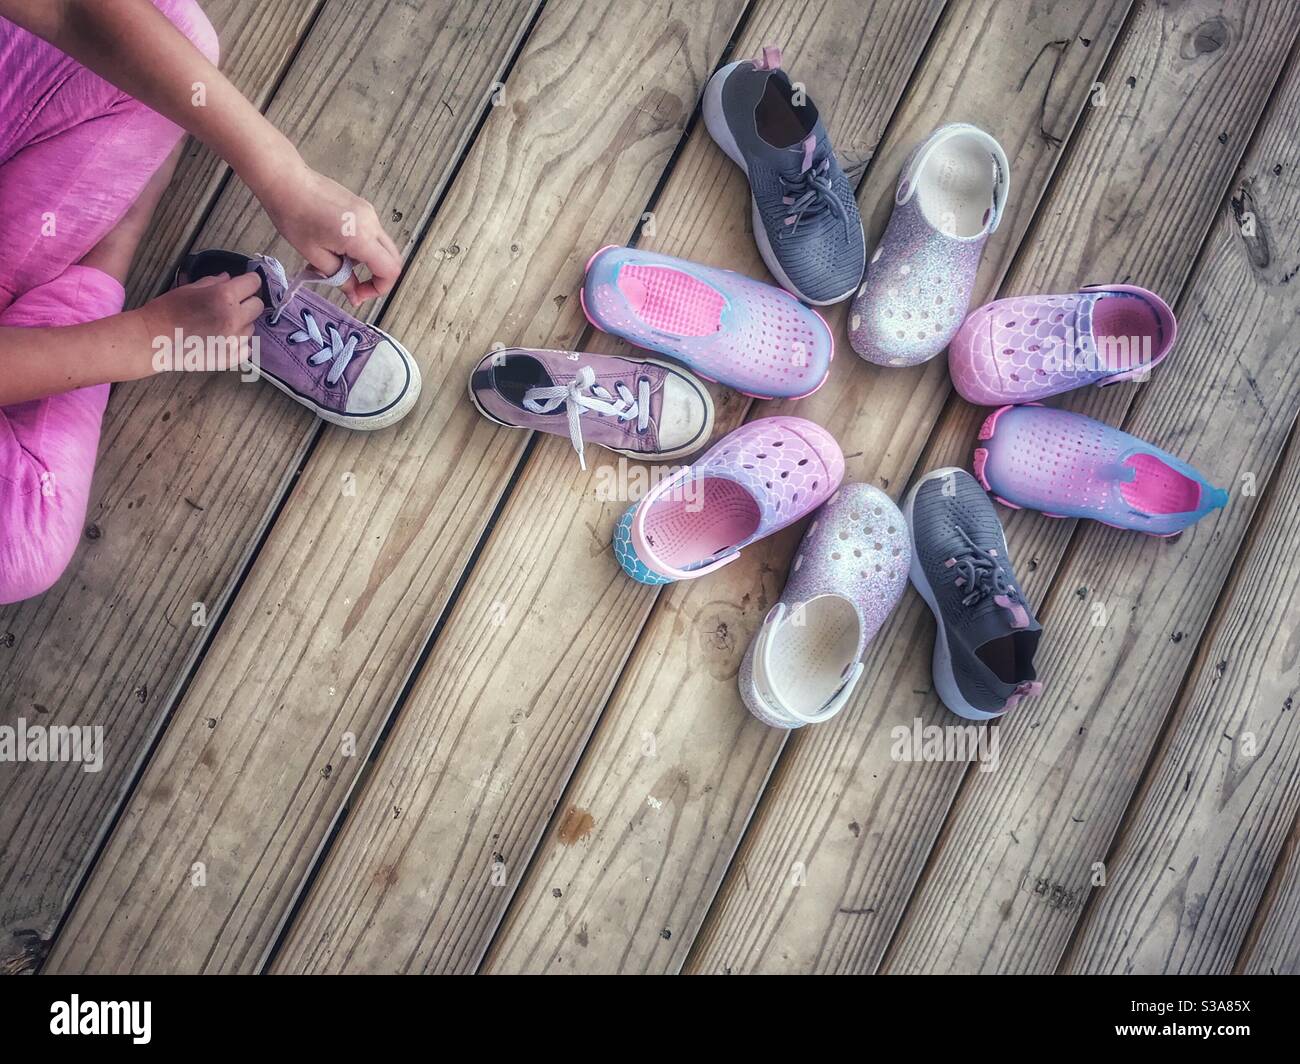 Estate foto di scarpe su portico arrangiato come un fiore da un bambino Foto Stock